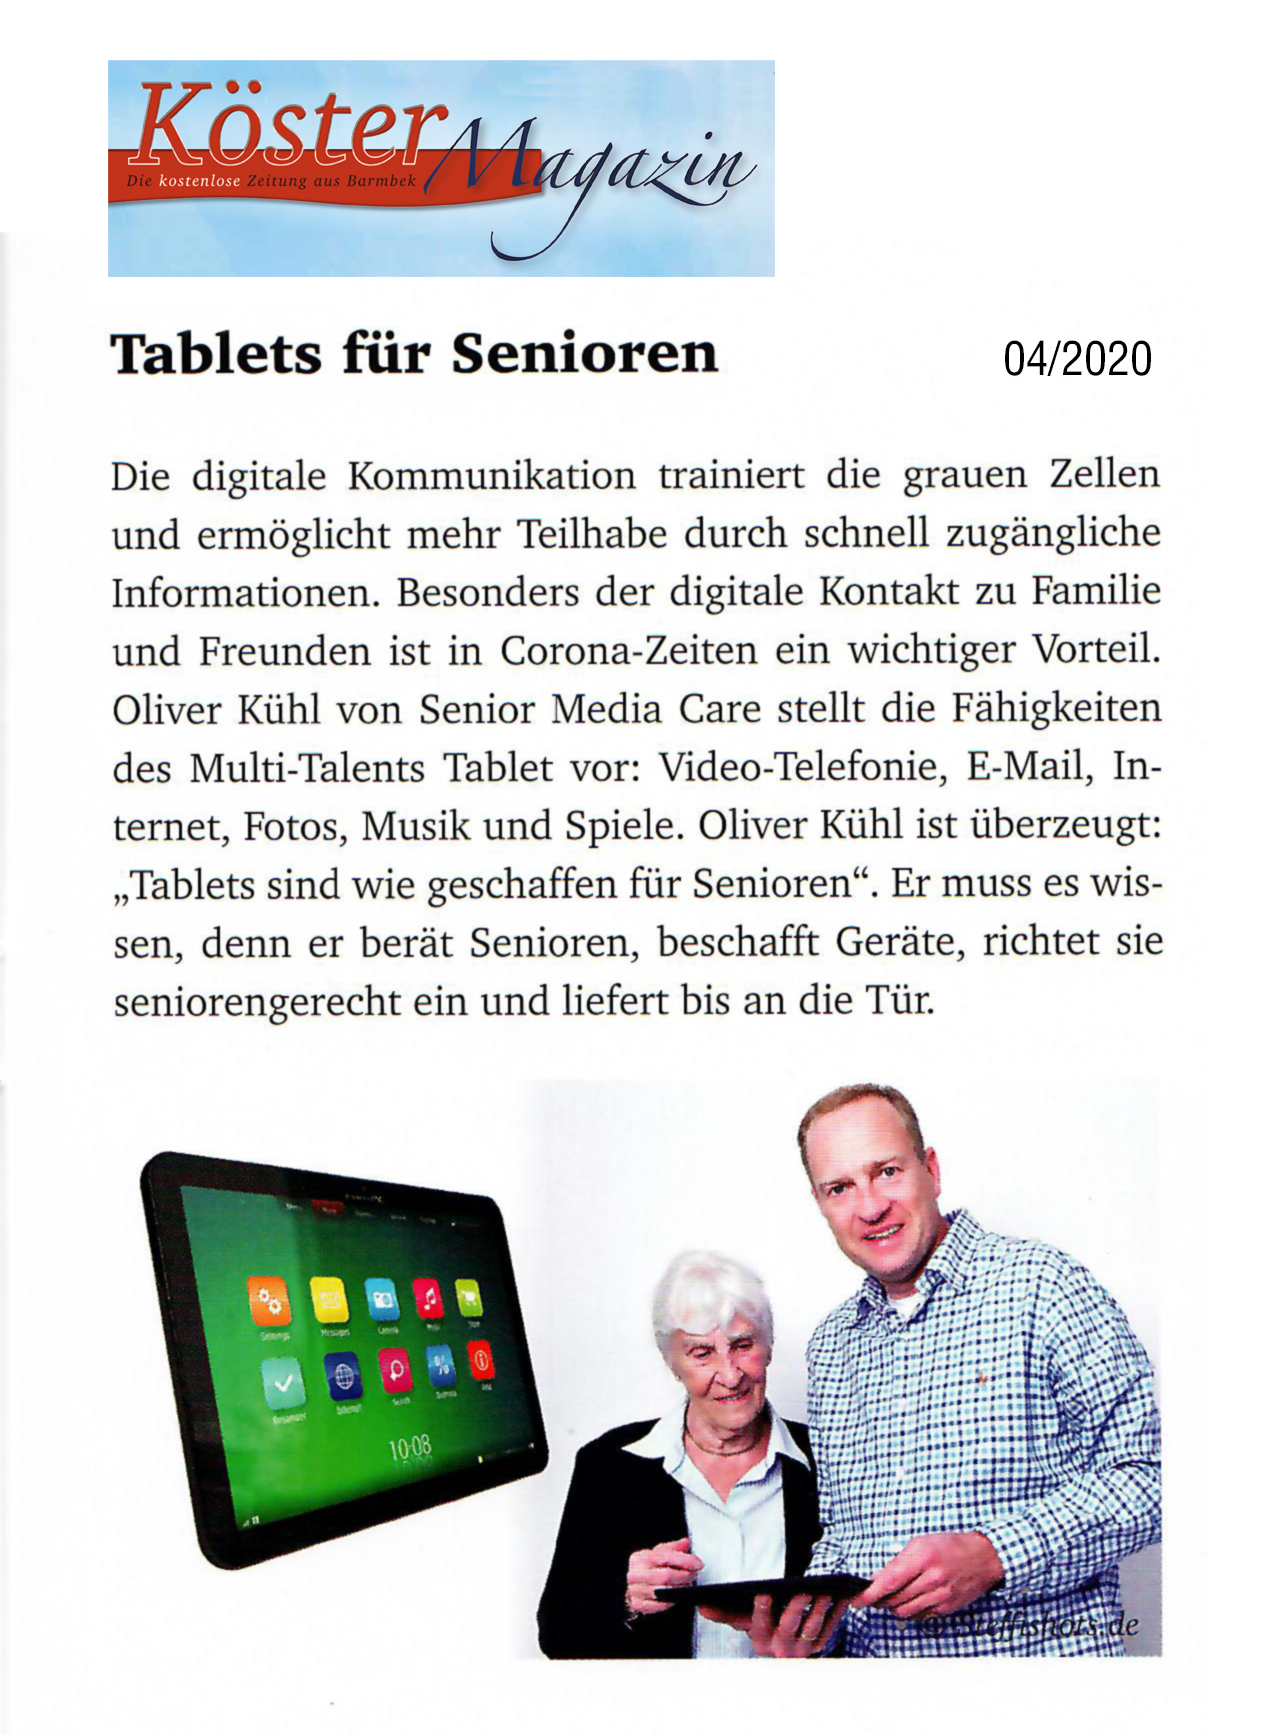 PR-Bericht "Tablets für Senioren" in der Zeitschrift Köster-Magazin